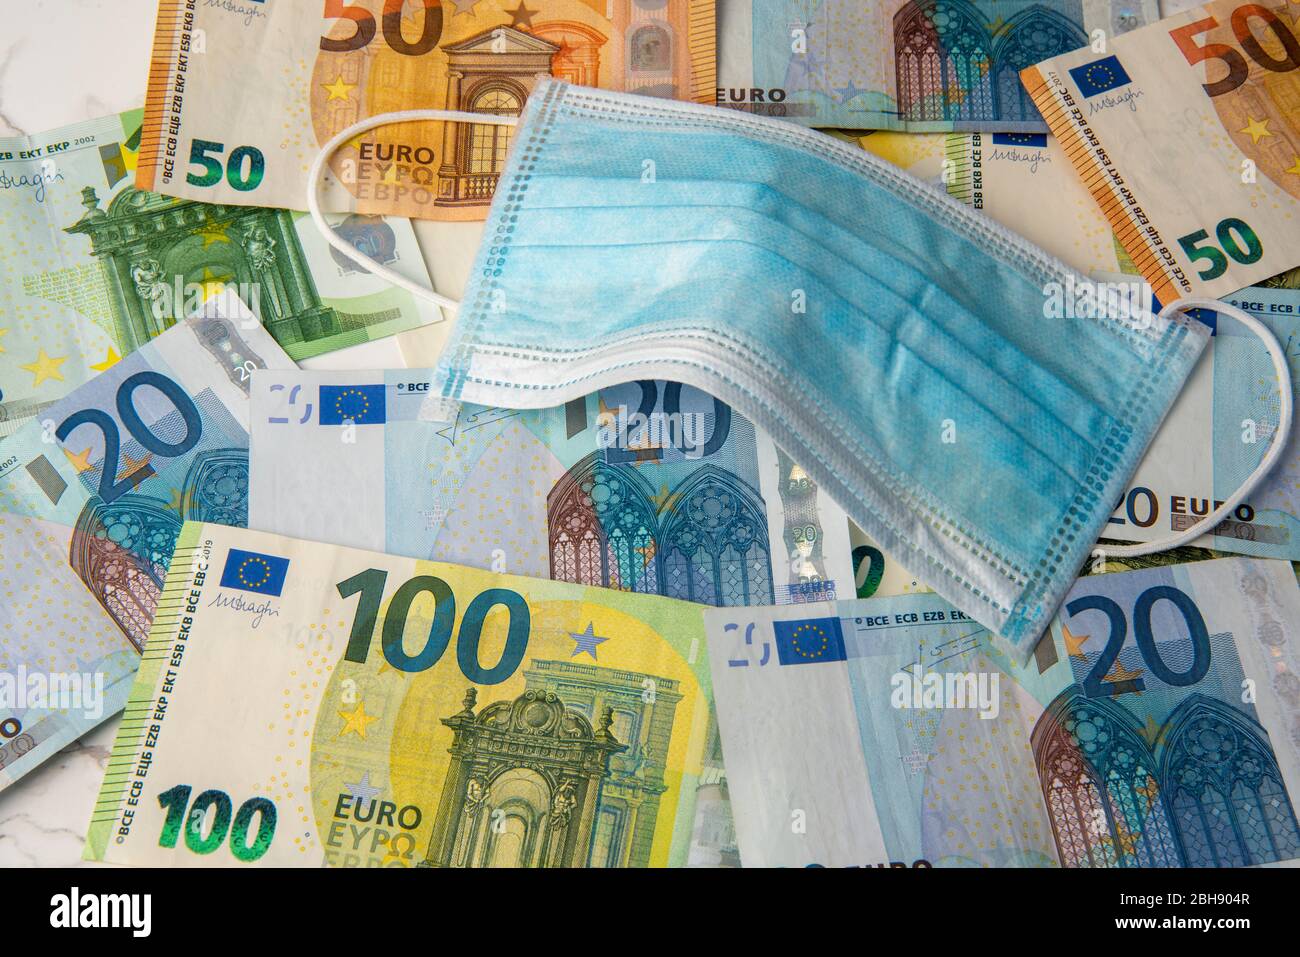 masque médical sur les billets en euros contexte économique corona Banque D'Images